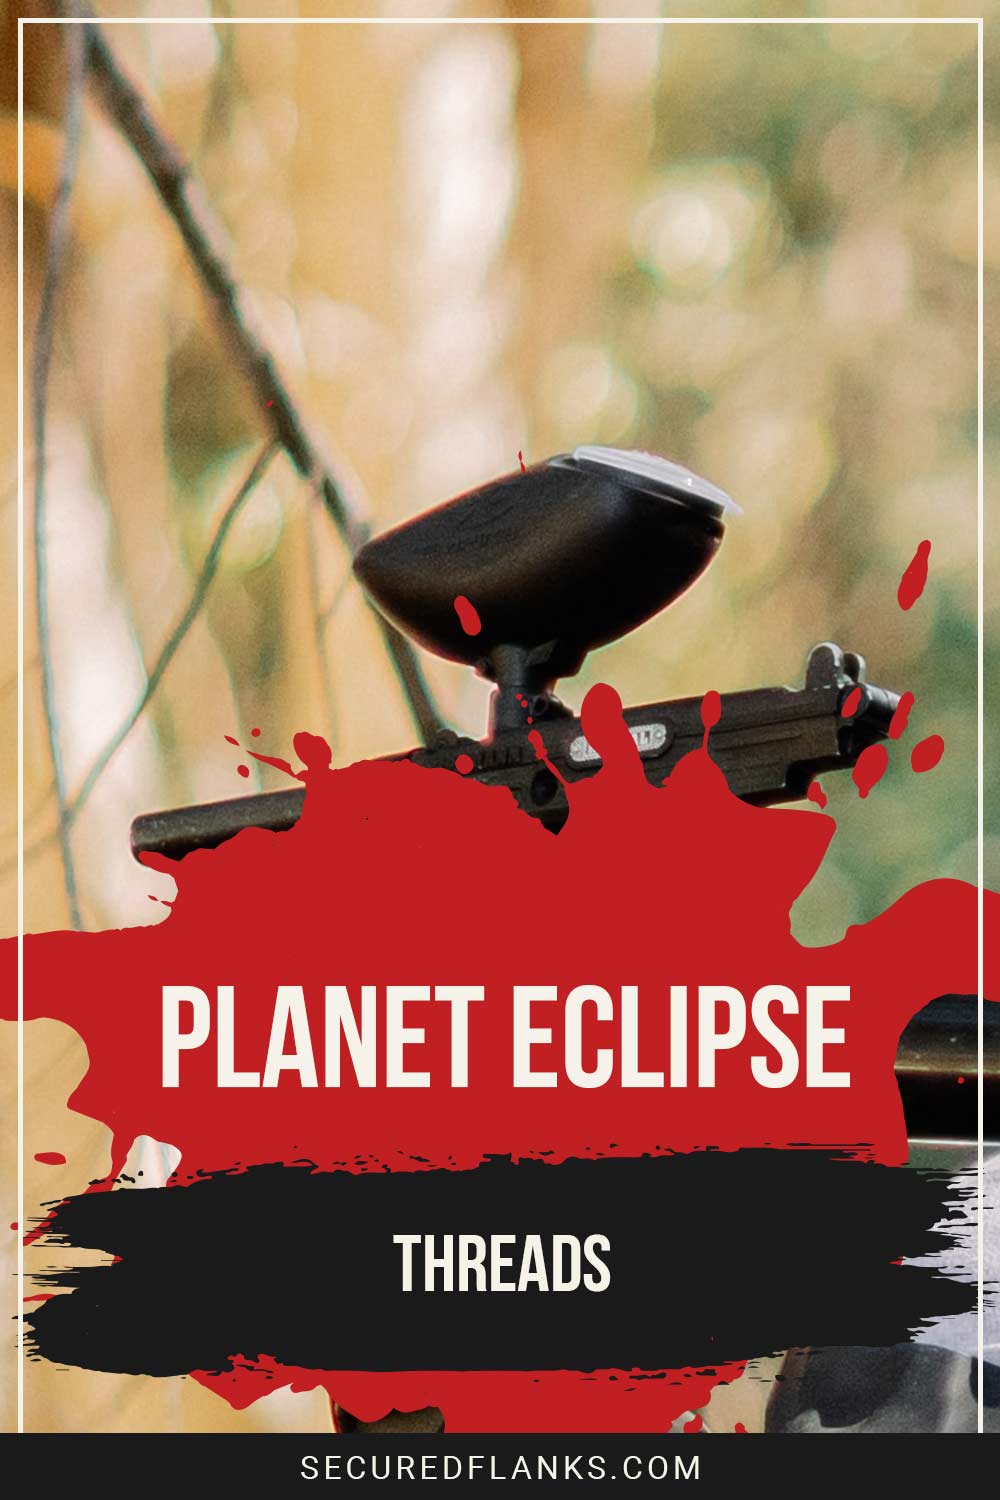 A paintball gun - Planet Eclipse Threads